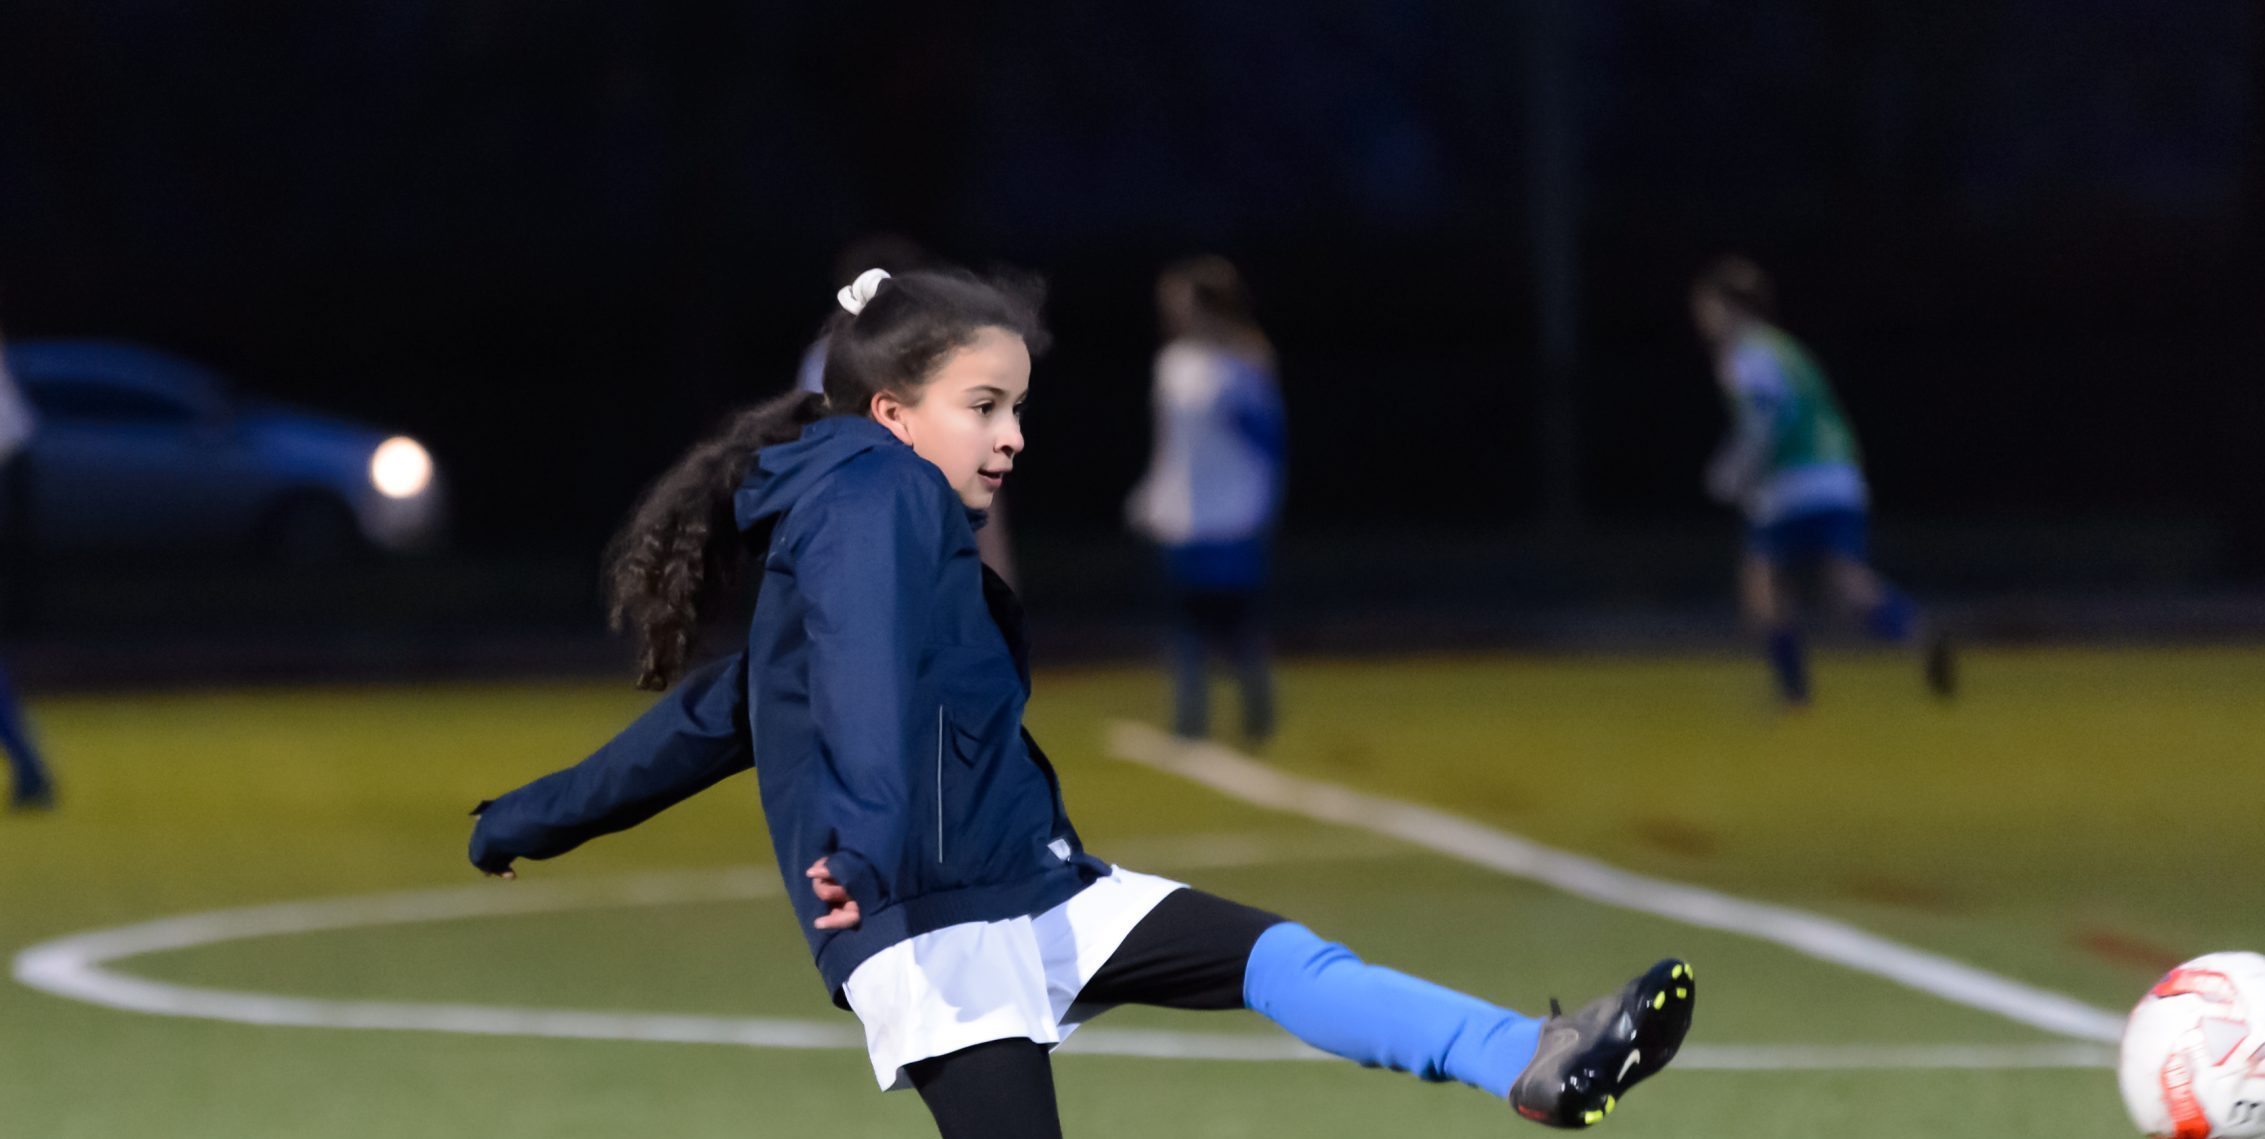 Young girl playing football